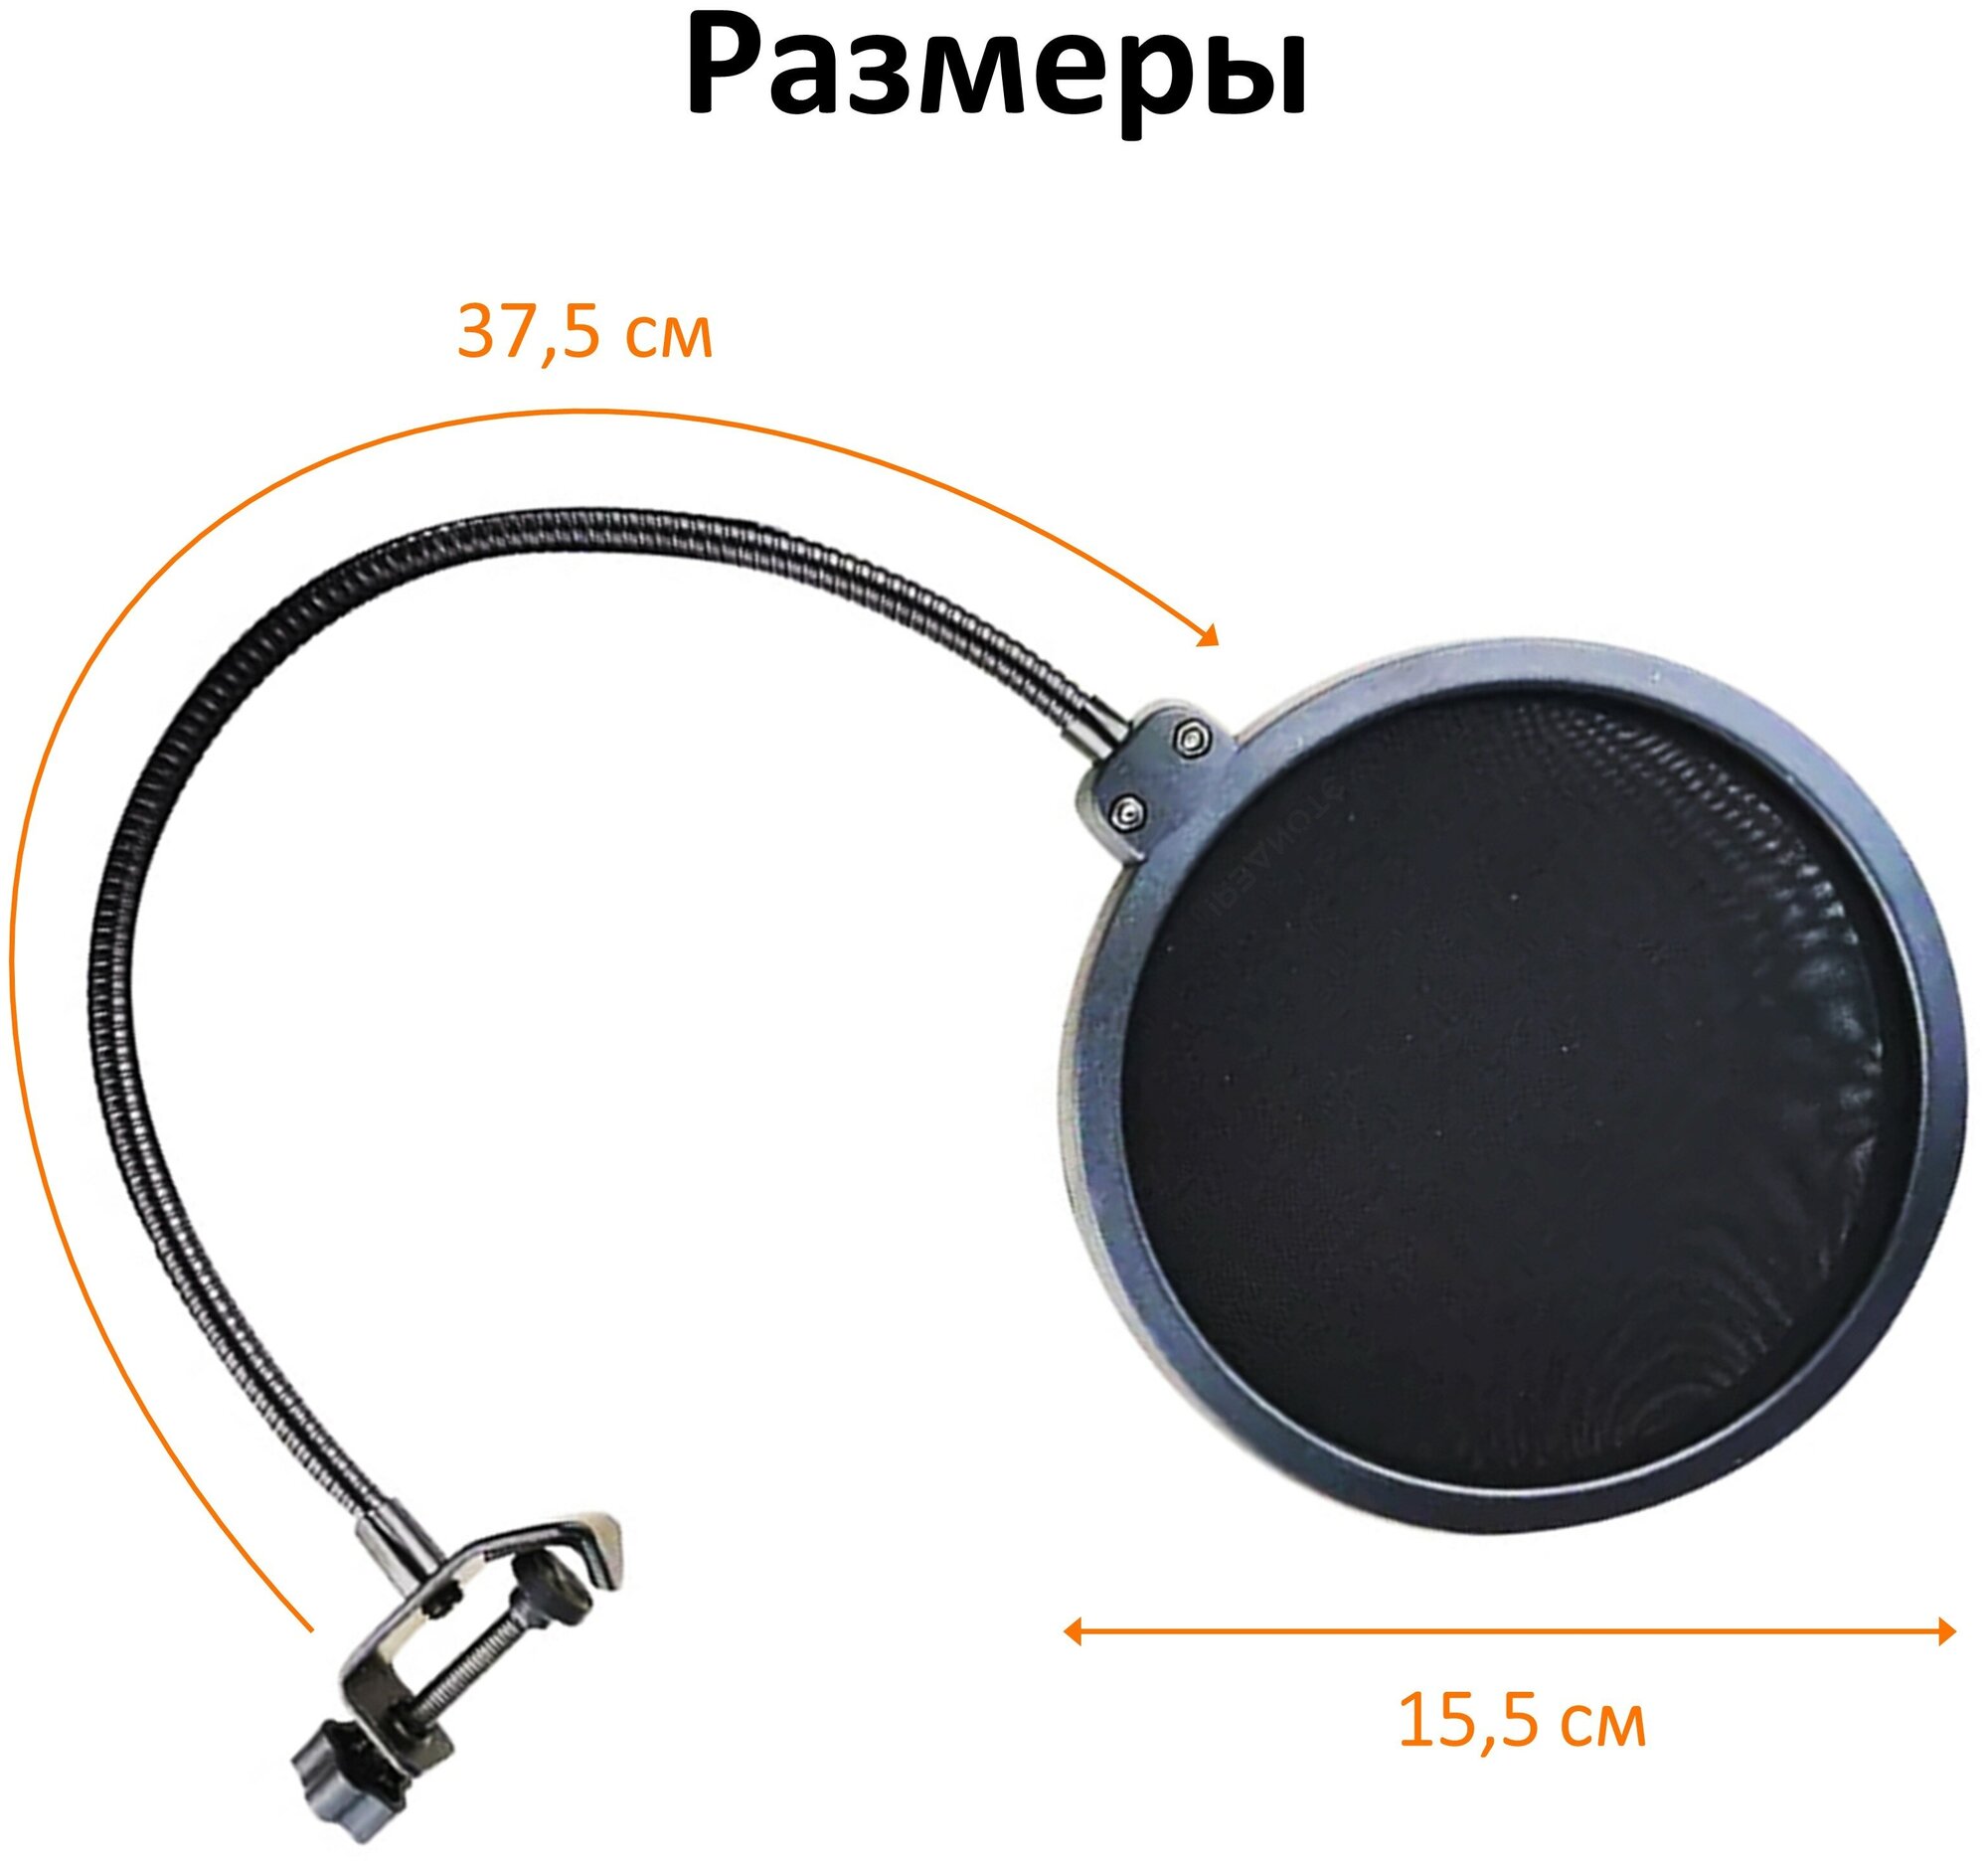 Двойной нейлоновый поп-фильтр для микрофона, черный / диаметр 15,5 см / гибкий держатель на струбцине